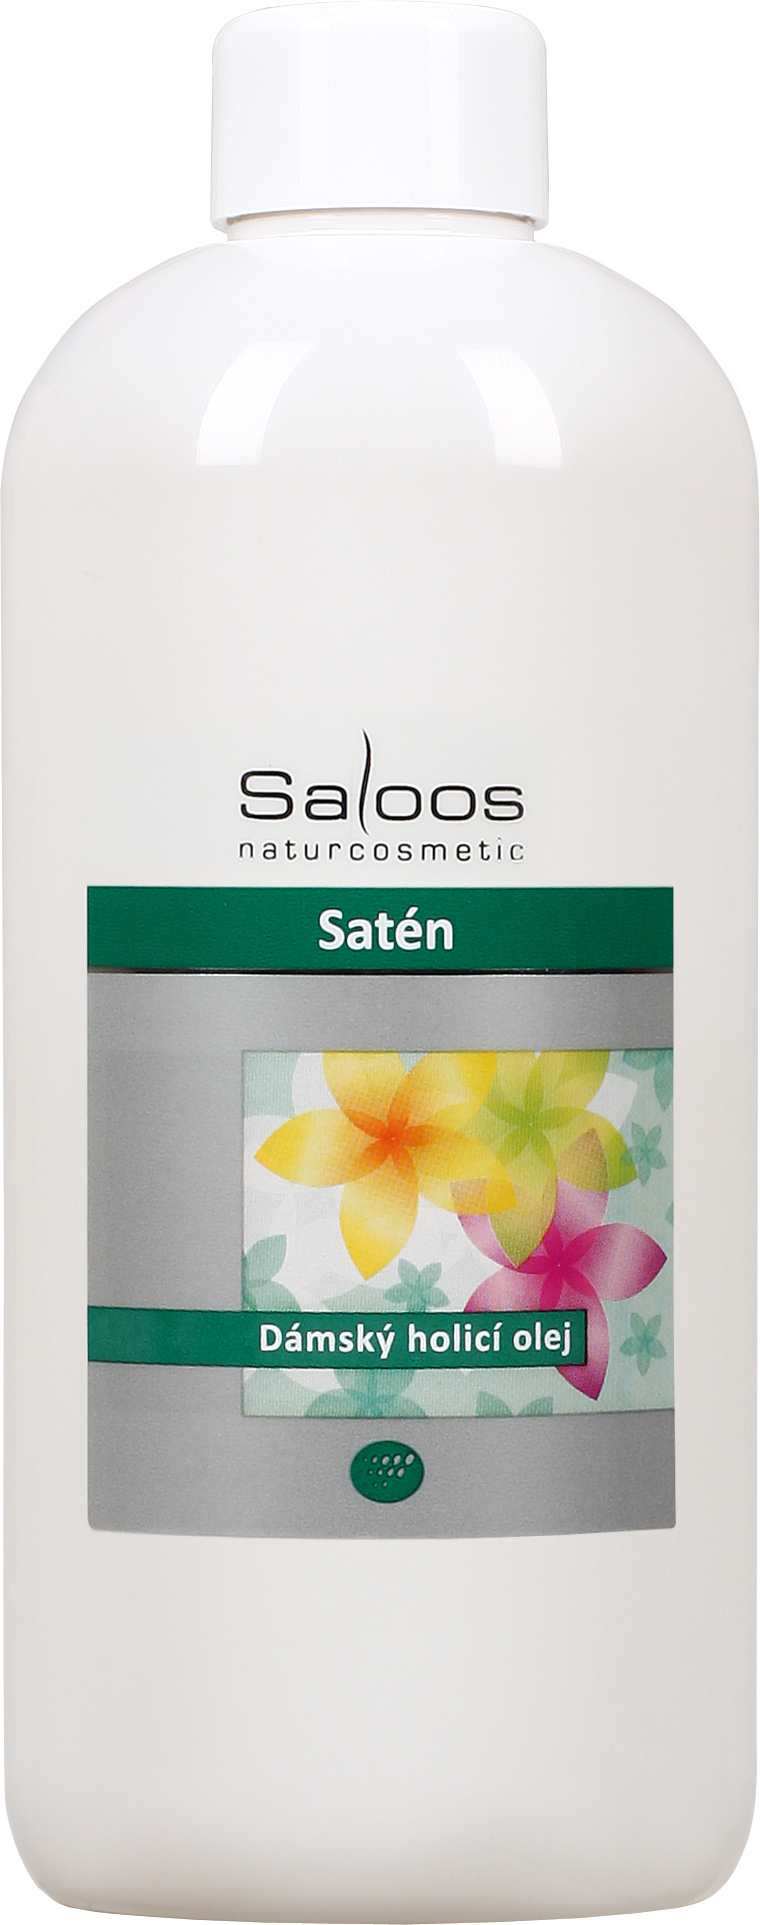 Saloos Satén - dámský holicí olej Balení: 500 ml